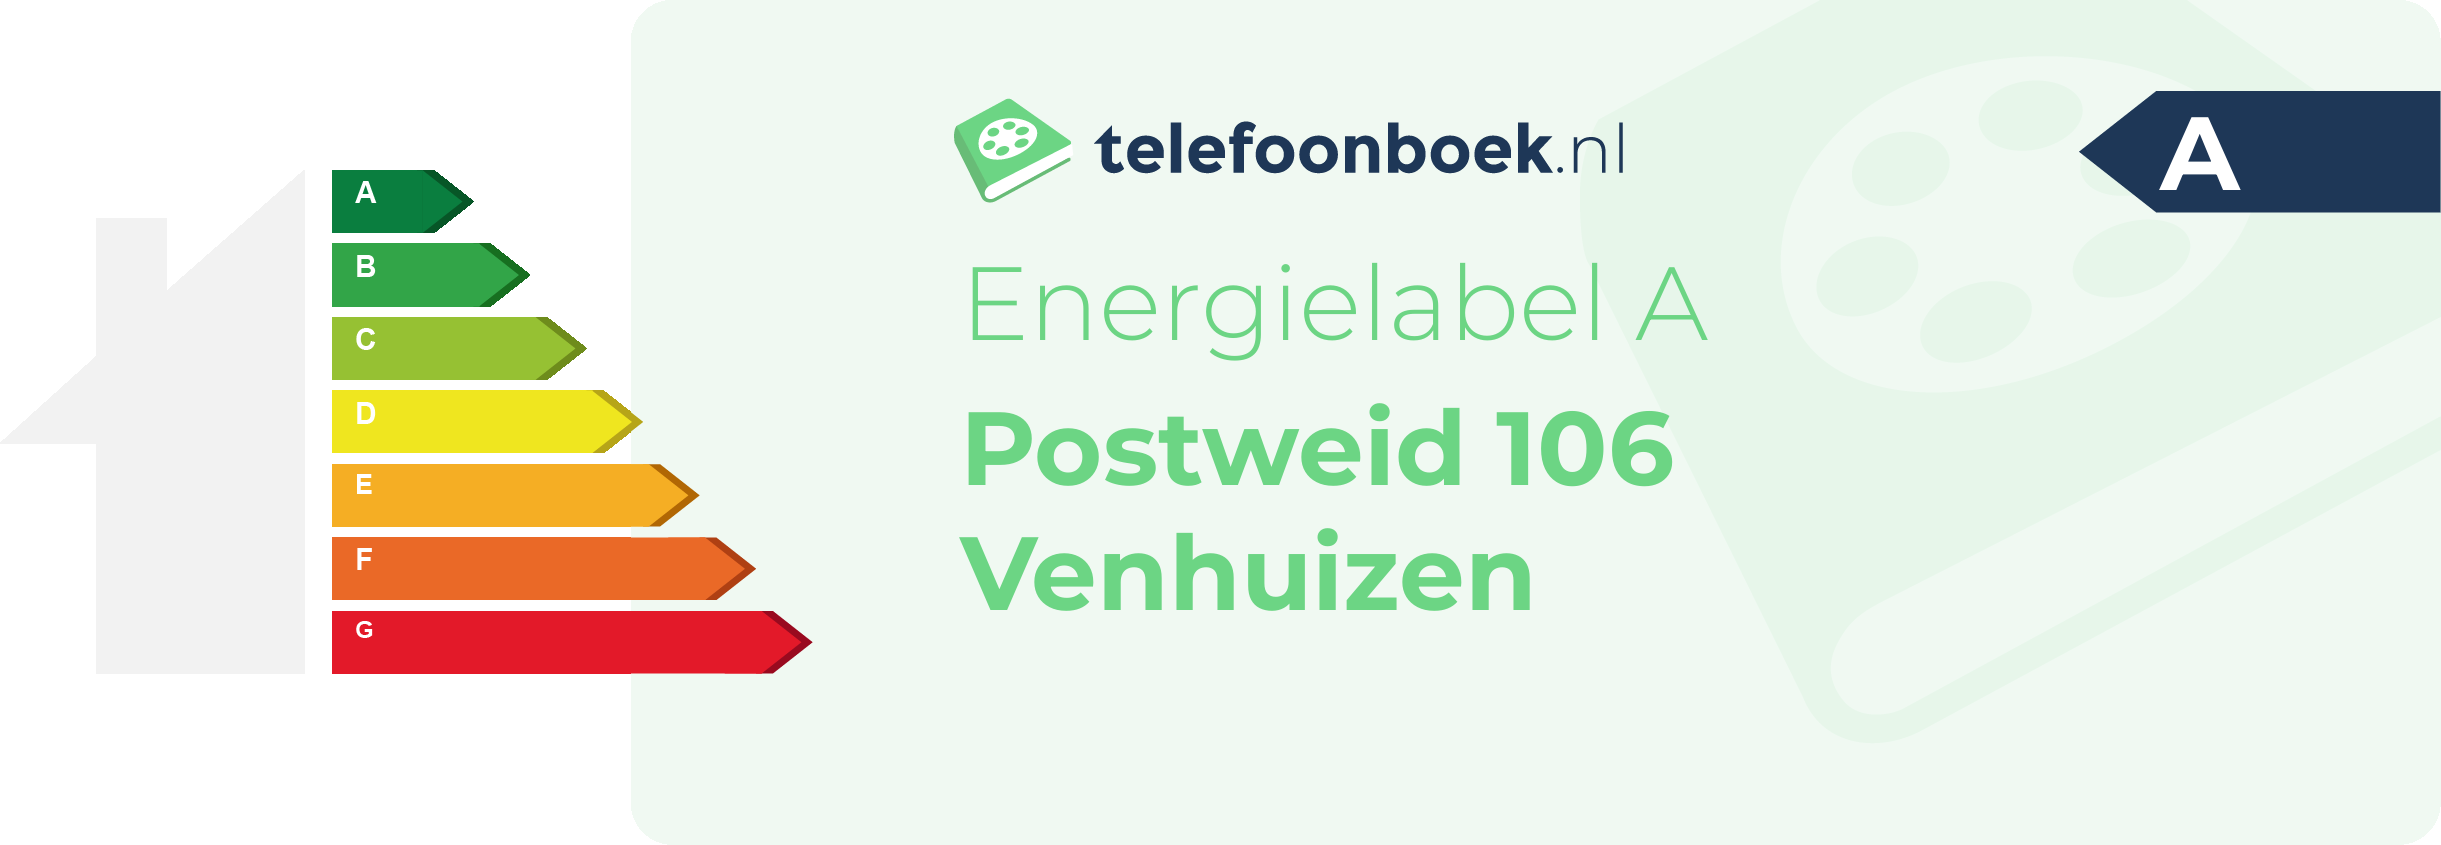 Energielabel Postweid 106 Venhuizen